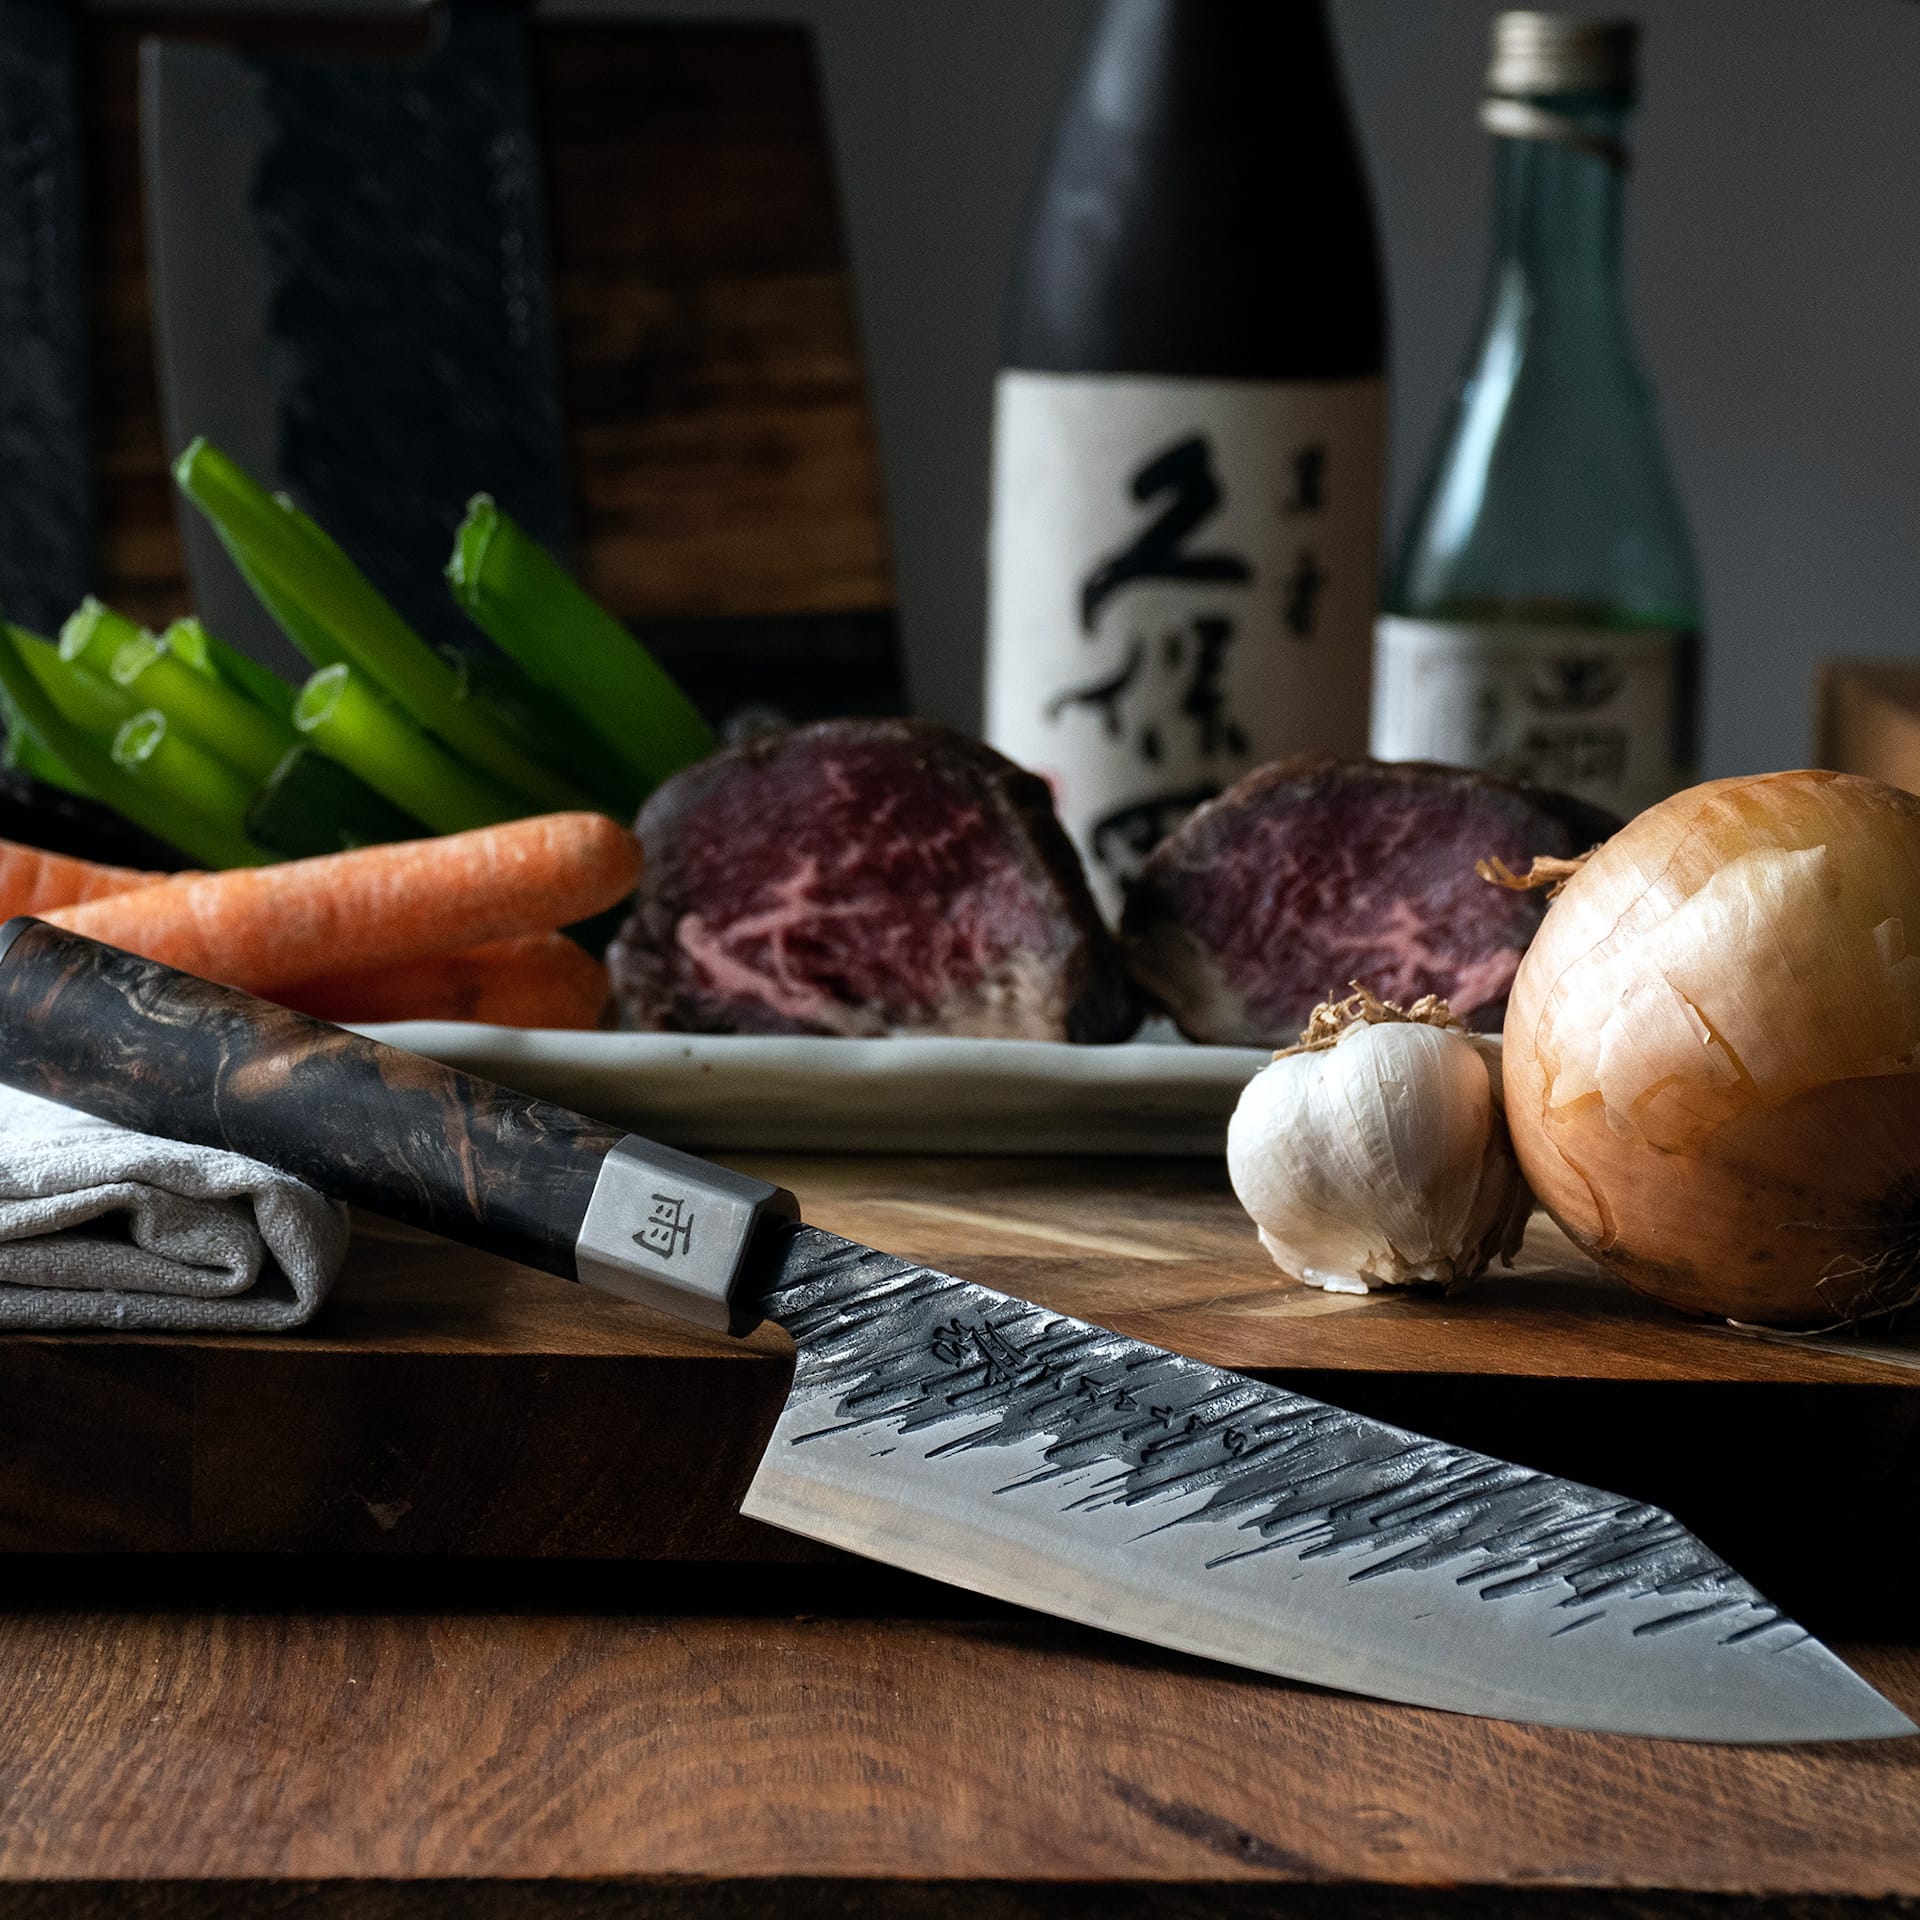 Satake Ame - Bunka, Chef's knife 15 cm - Satake - NO GA